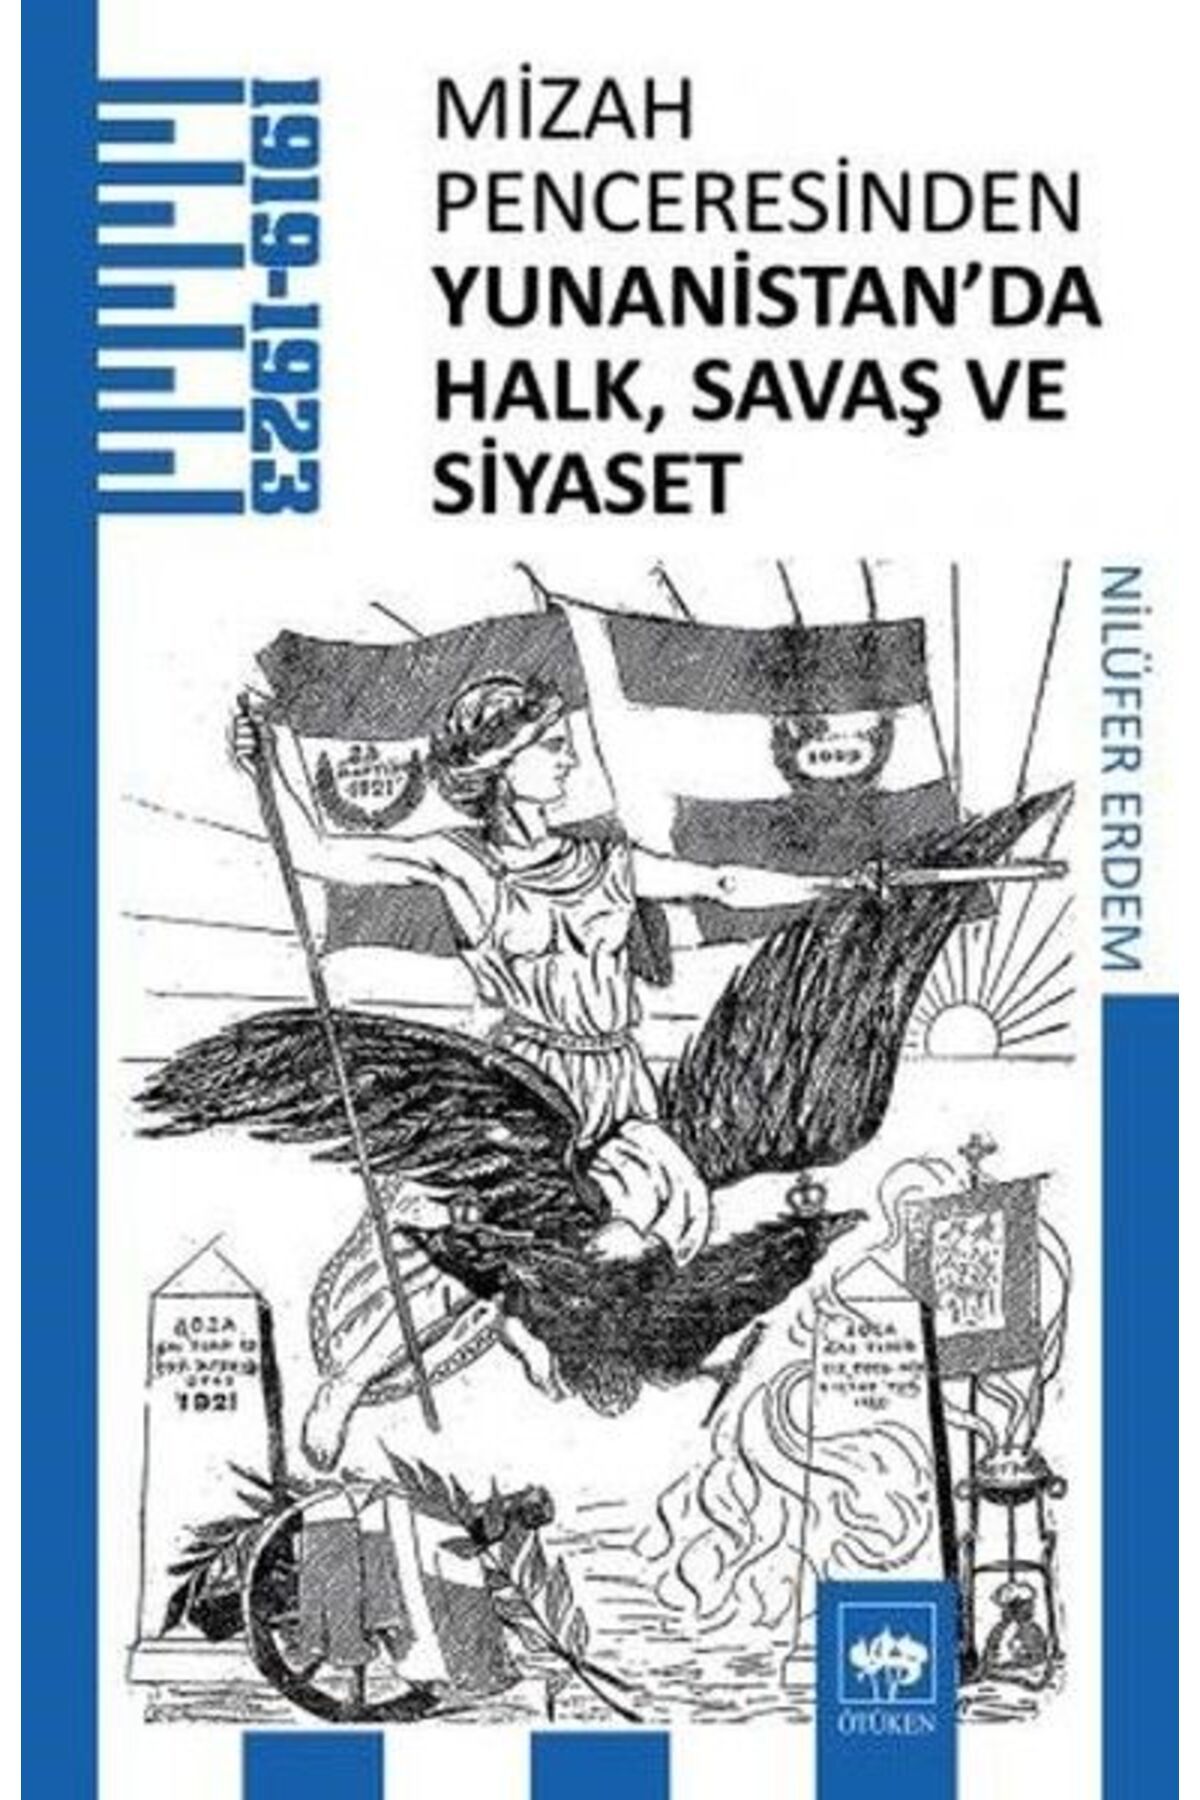 Ötüken Yayınları Mizah Penceresinden Yunanistan'da Halk, Savaş Ve Siyaset